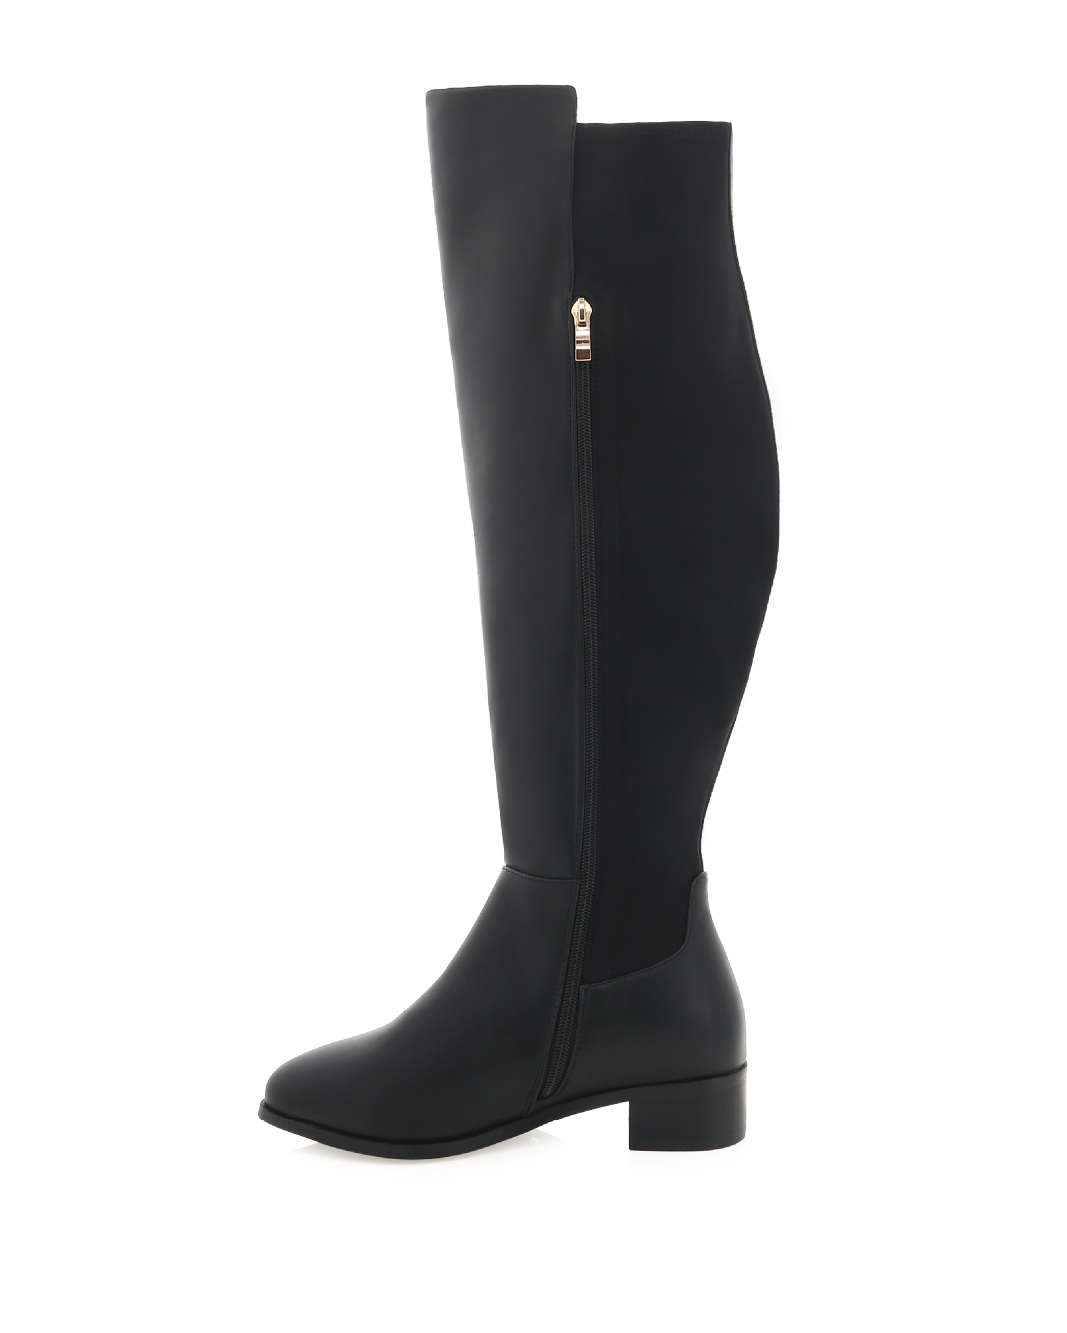 IDAHO CURVE - BLACK-Boots-Billini-Billini